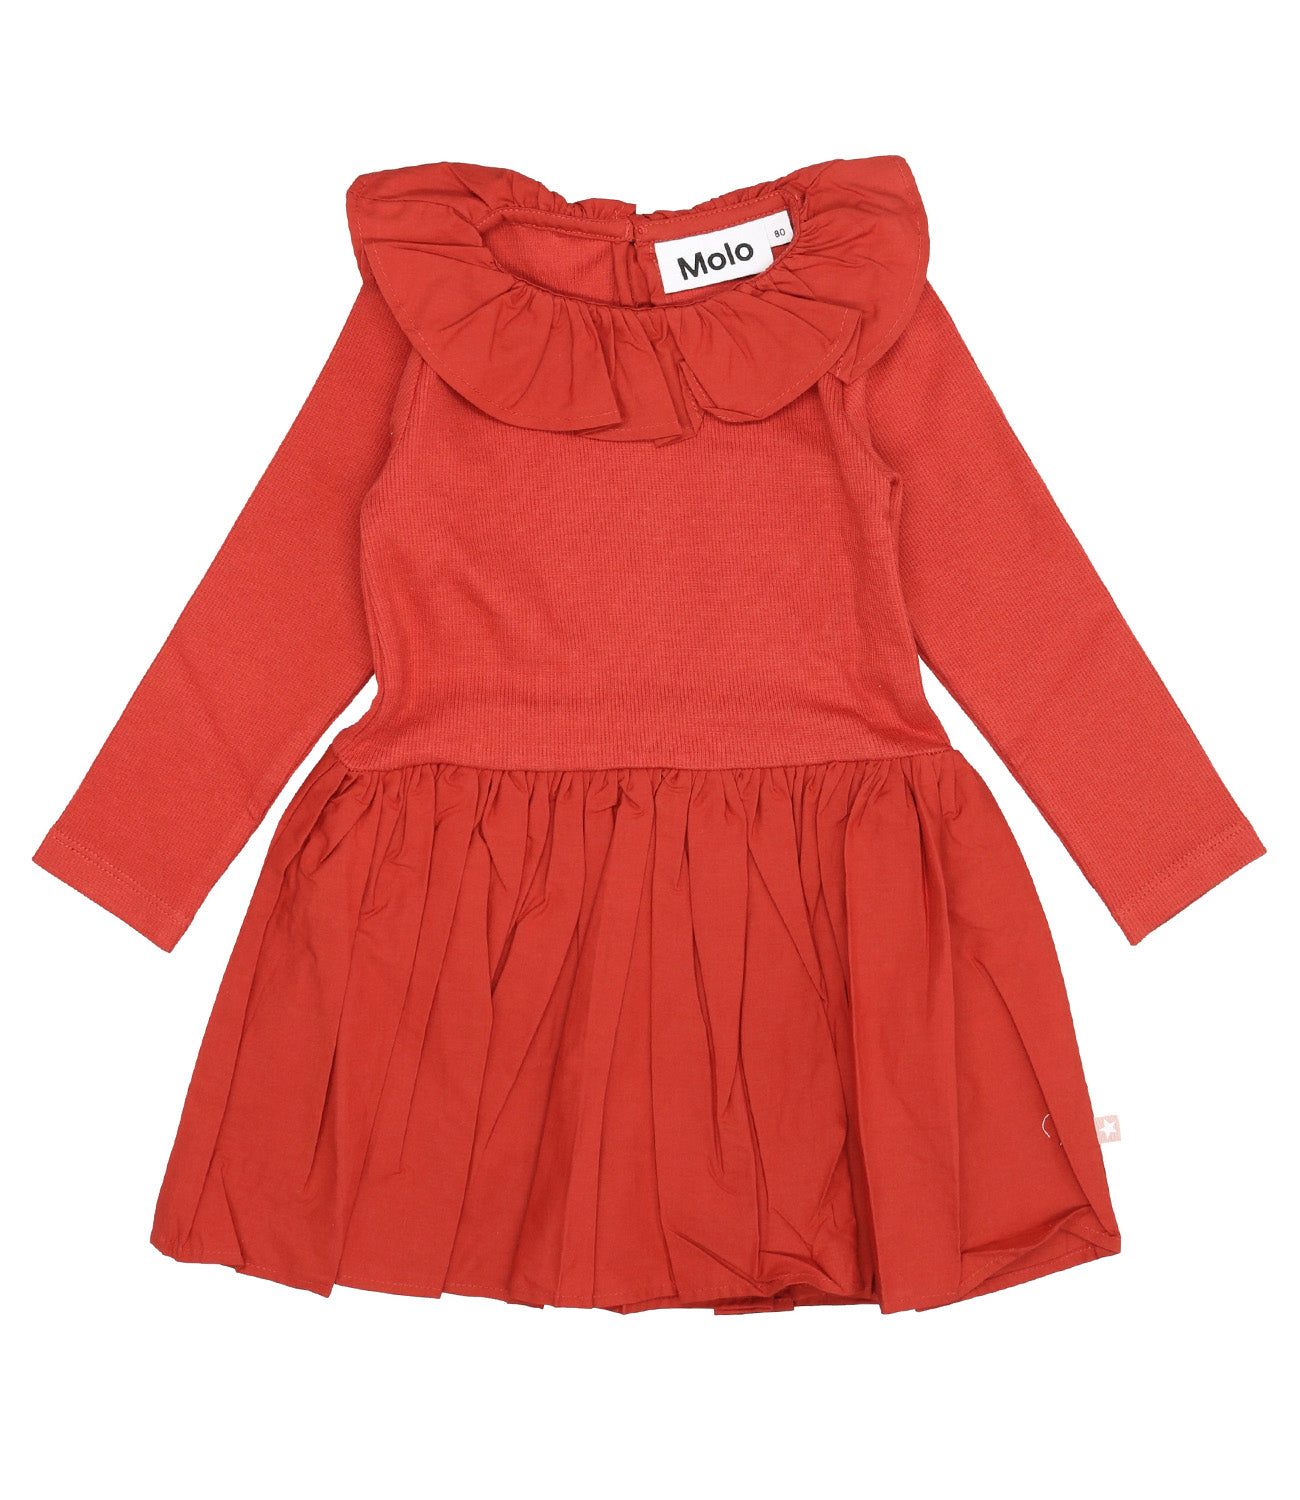 Molo | Red Dress